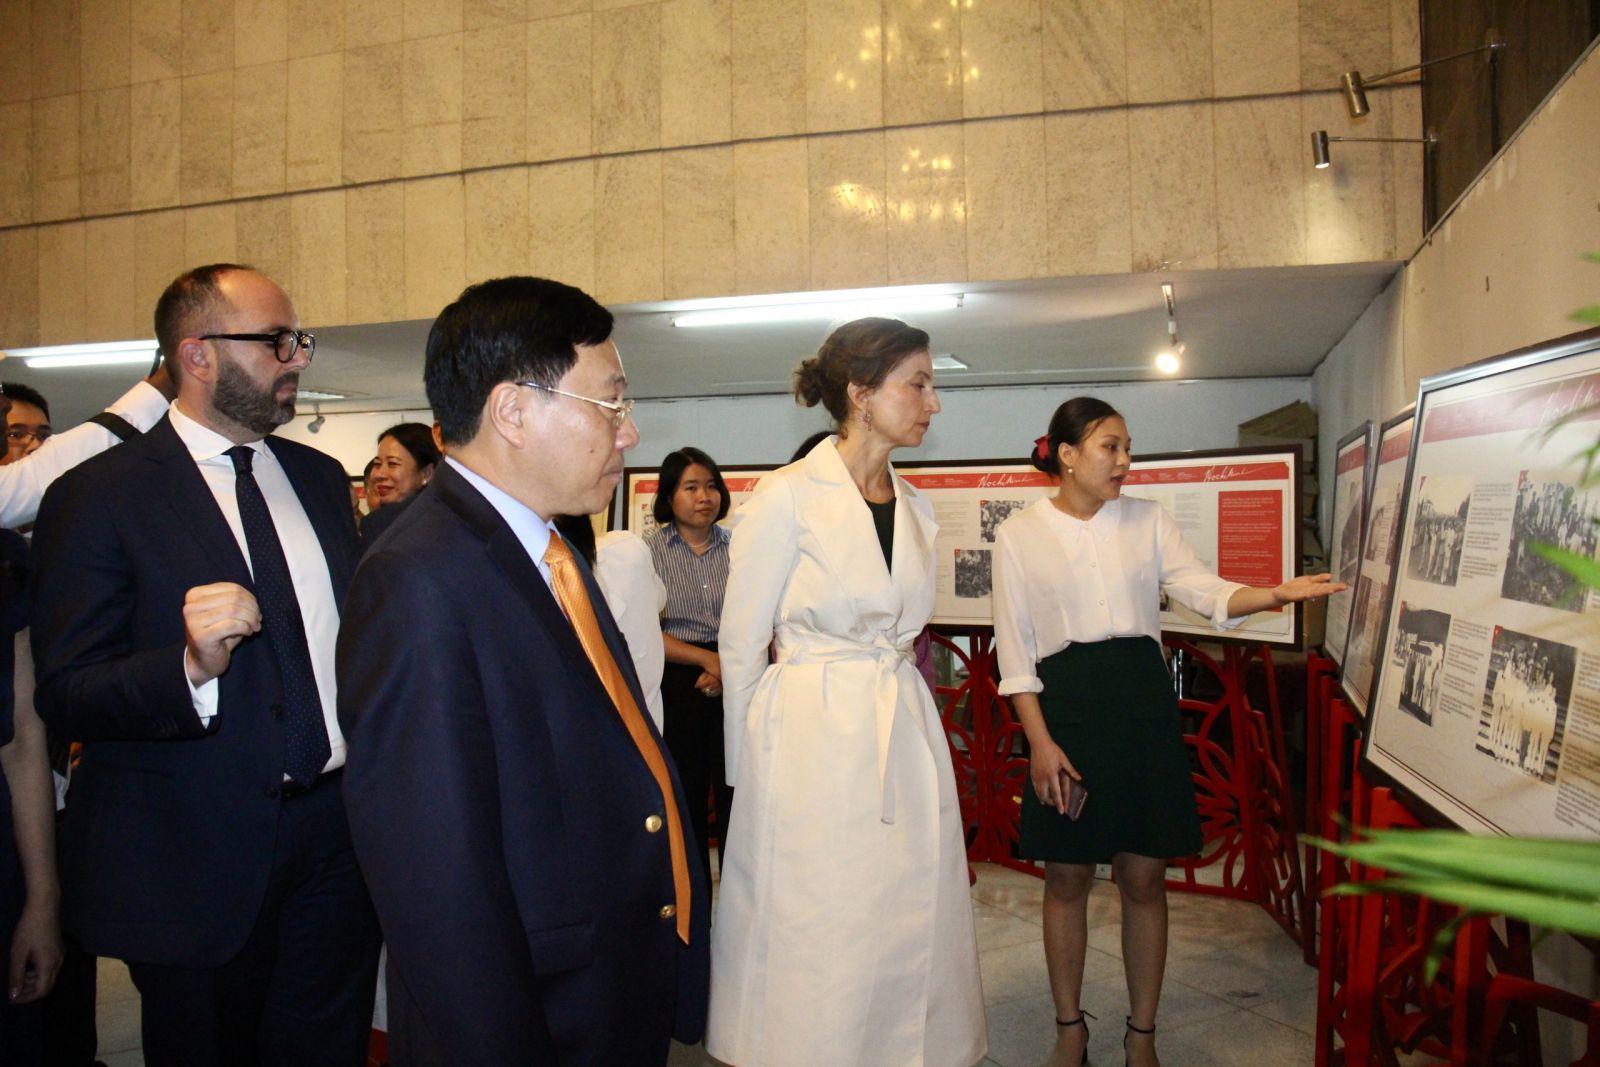 Chuỗi hoạt động kỷ niệm 35 năm UNESCO ra Nghị quyết vinh danh Chủ tịch Hồ Chí Minh